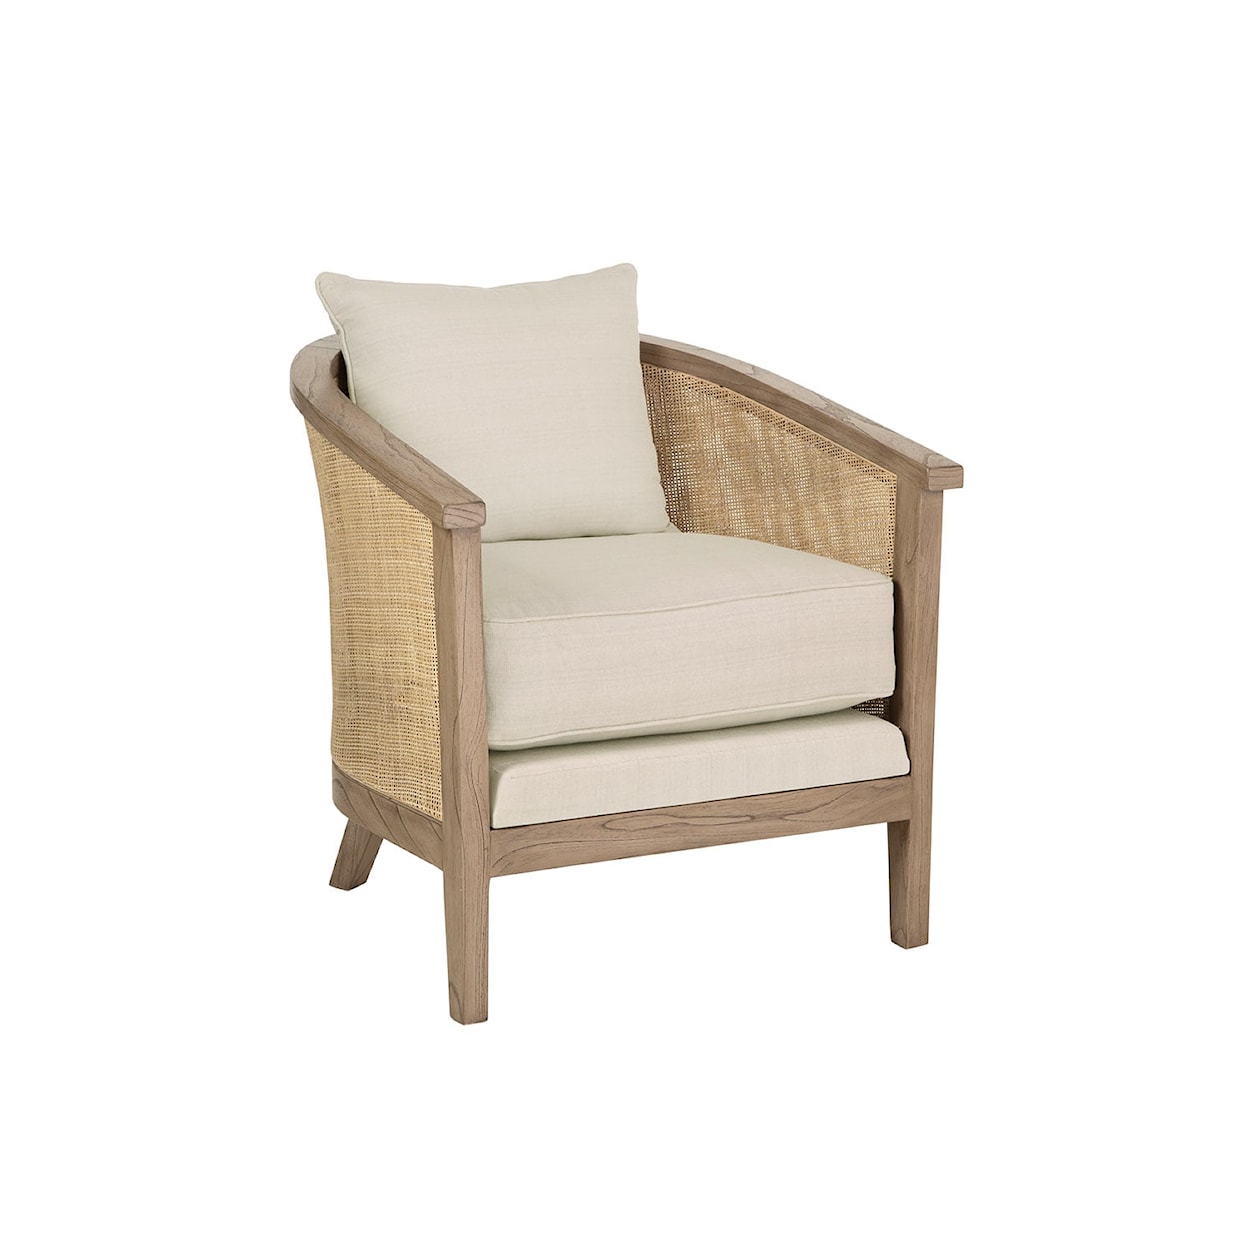 Furniture Classics Furniture Classics Delgato Occasional Chair